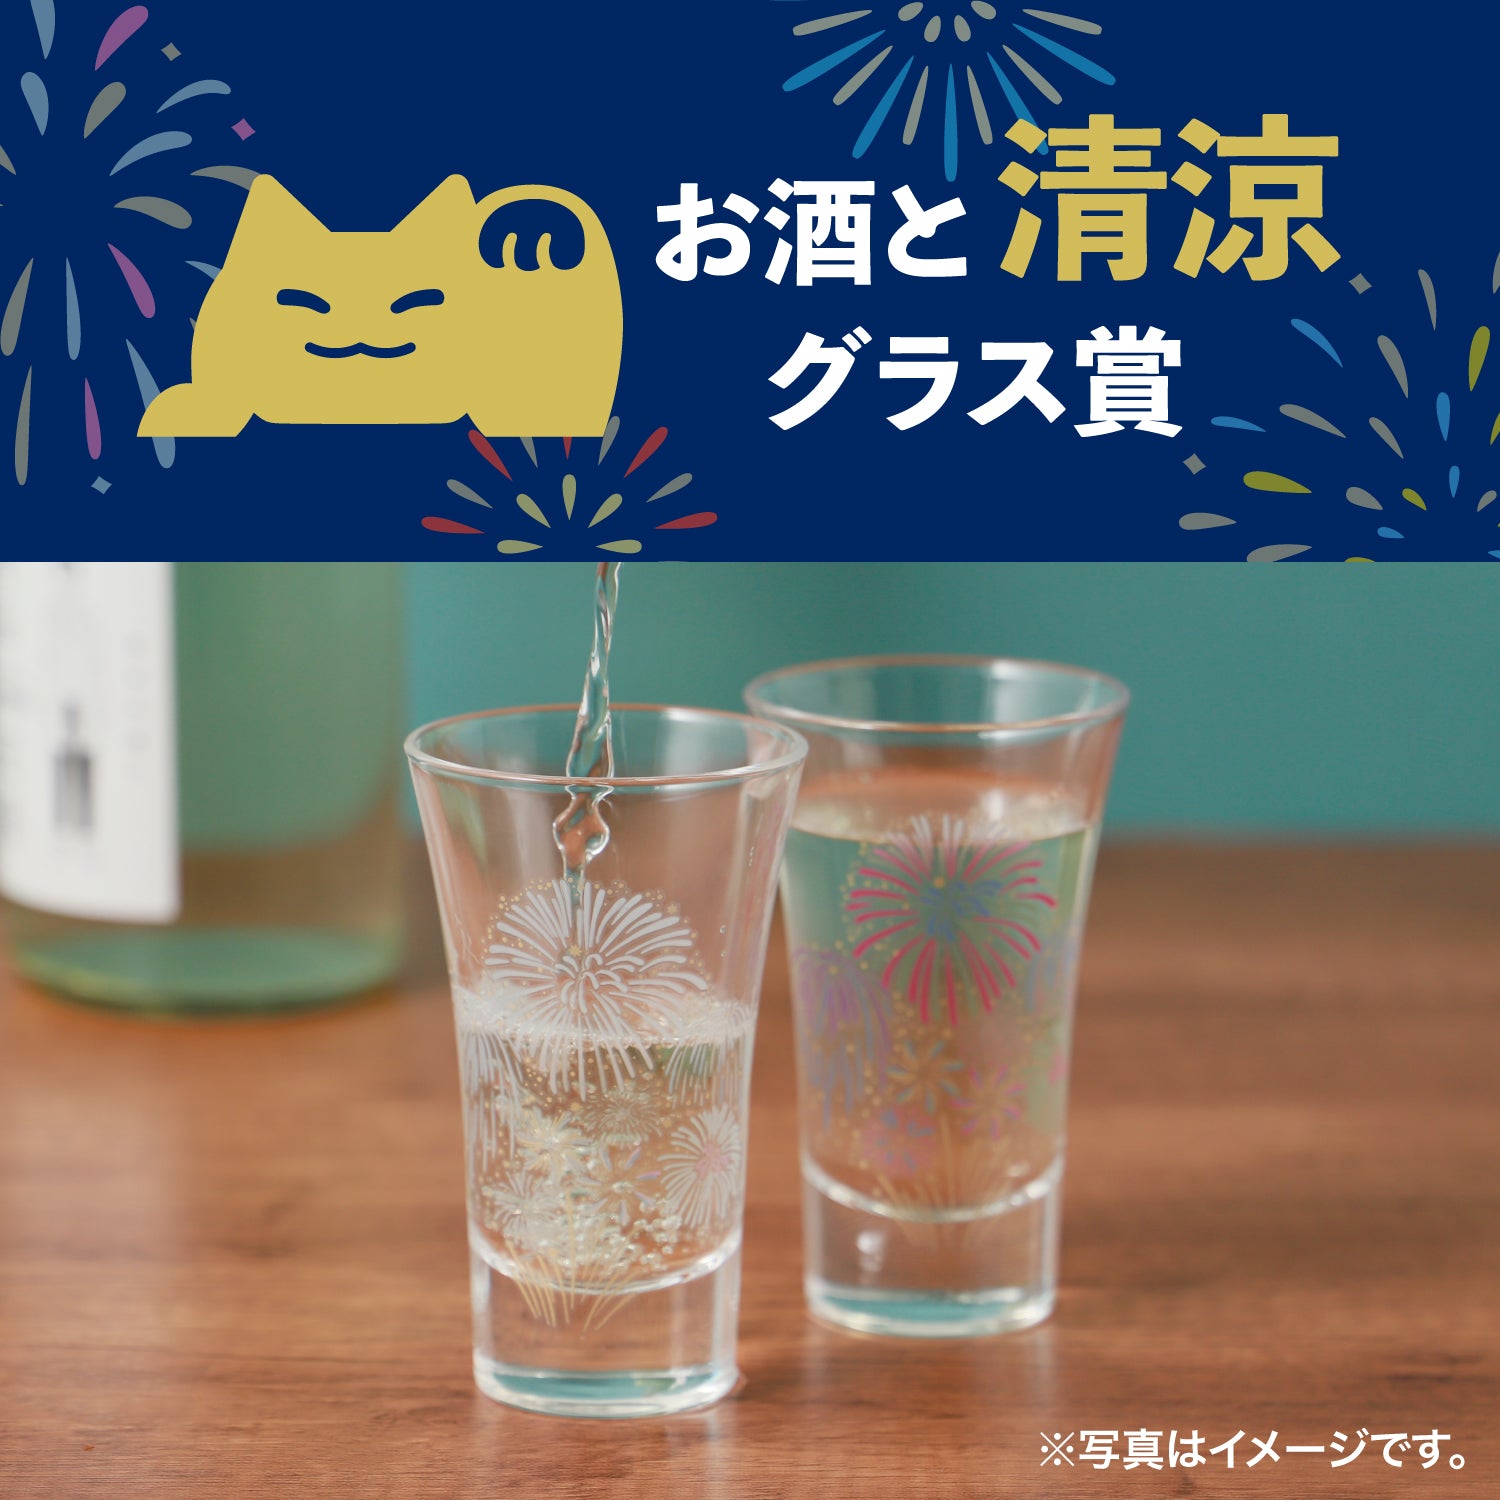 酒ガチャ夏祭り「グラス賞」